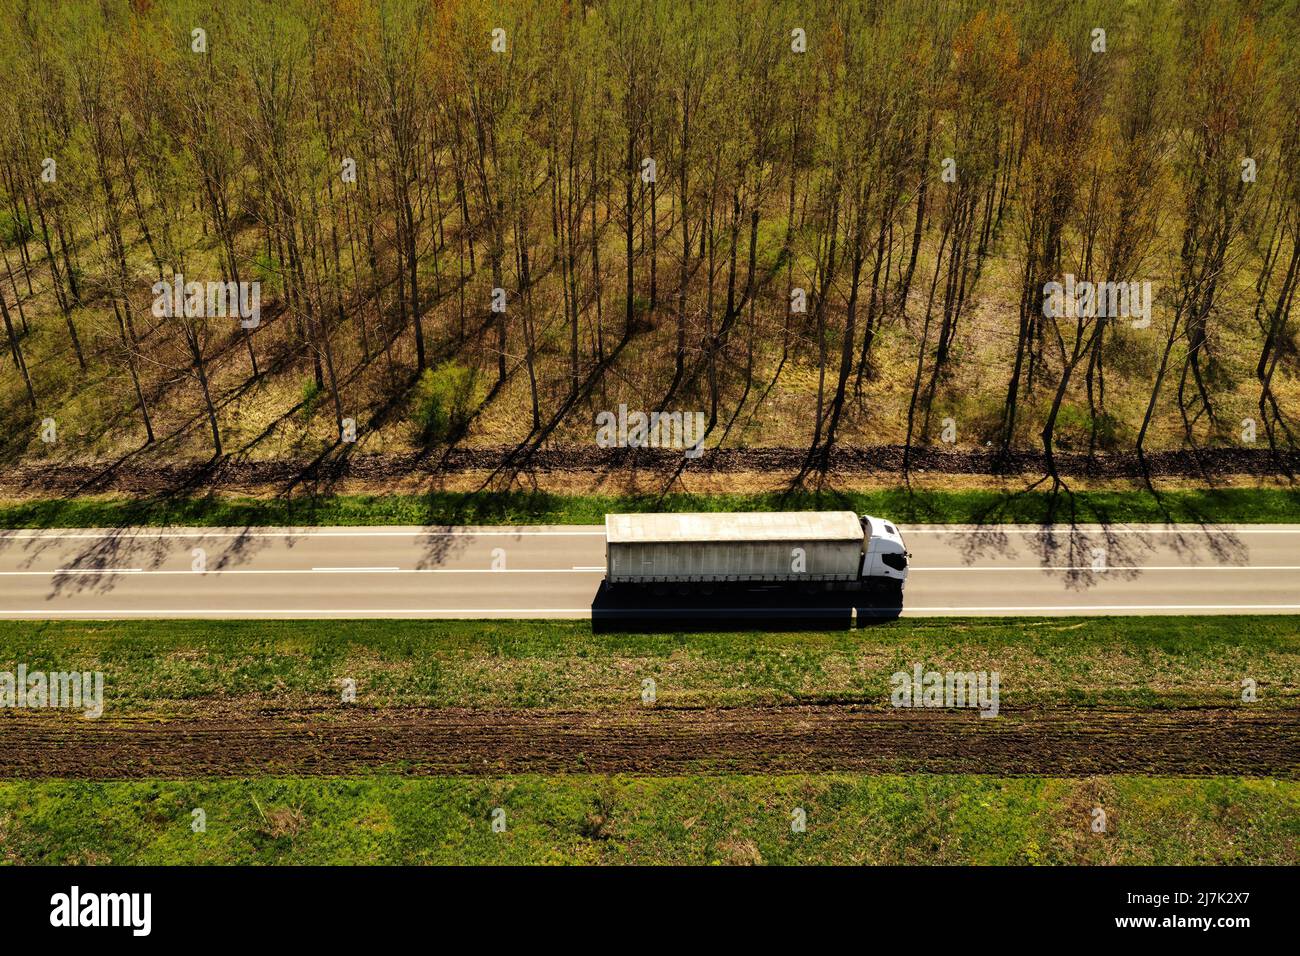 Scatto aereo con vista ad angolo alto del semi-camion su autostrada con paesaggio boscoso sullo sfondo, concetto di industria dei trasporti Foto Stock